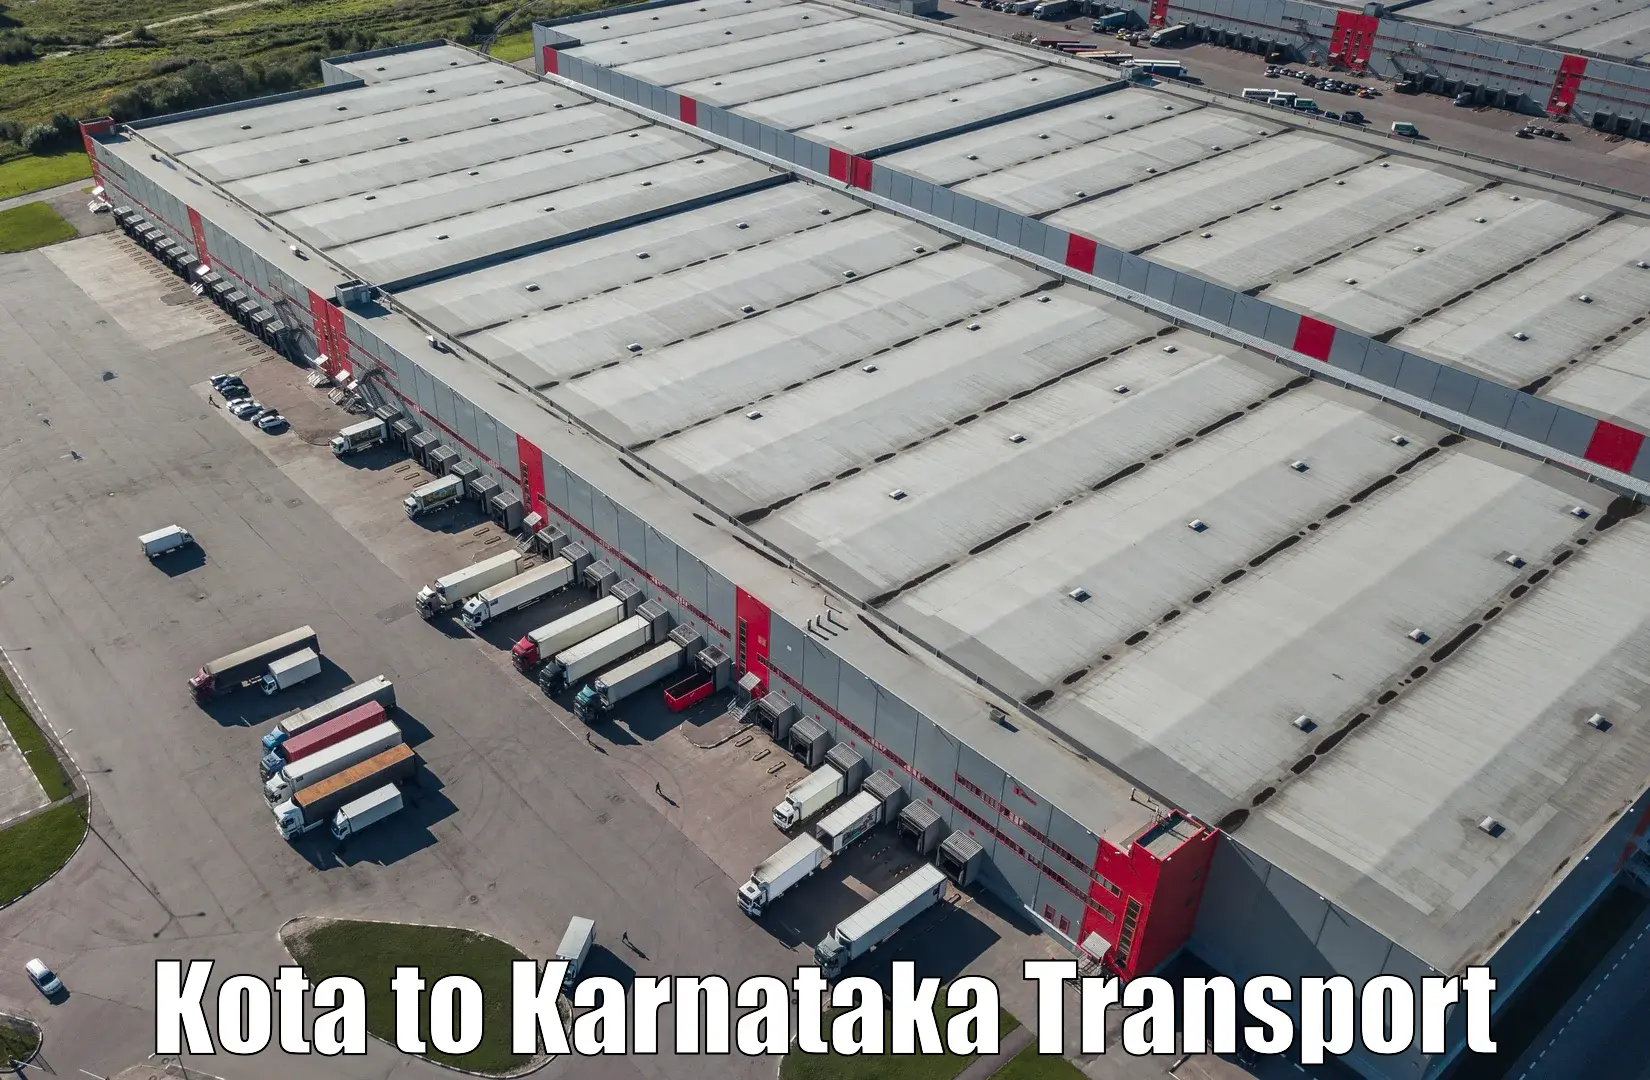 Best transport services in India Kota to Ukkadagatri